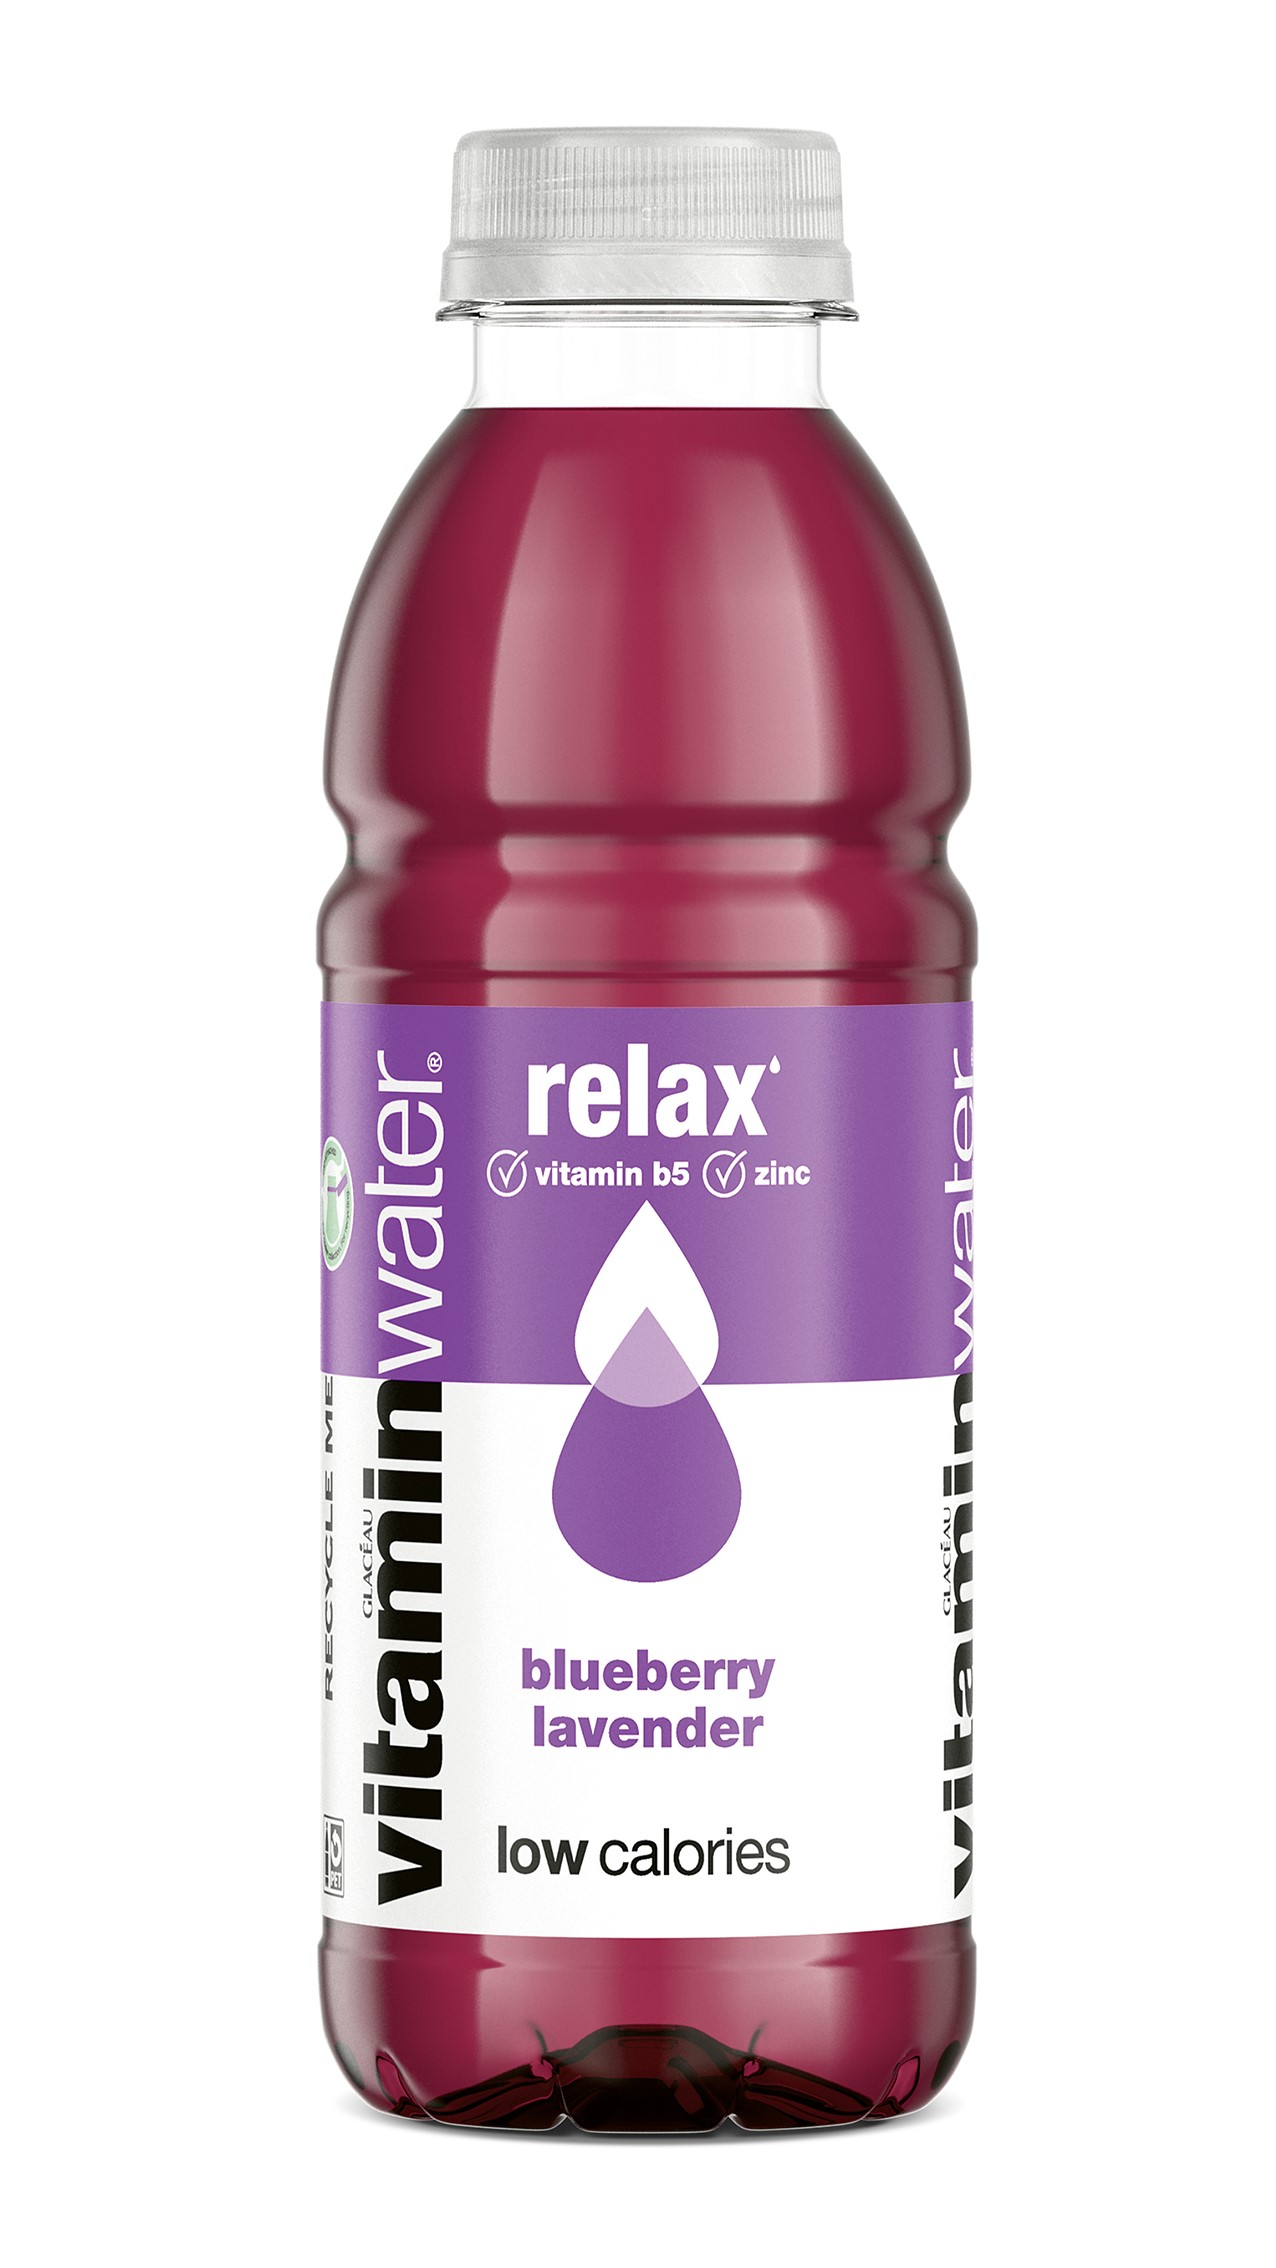 Eine Flasche Glacéau Vitaminwater  in der Variante relax Heidelbeere Lavendel.